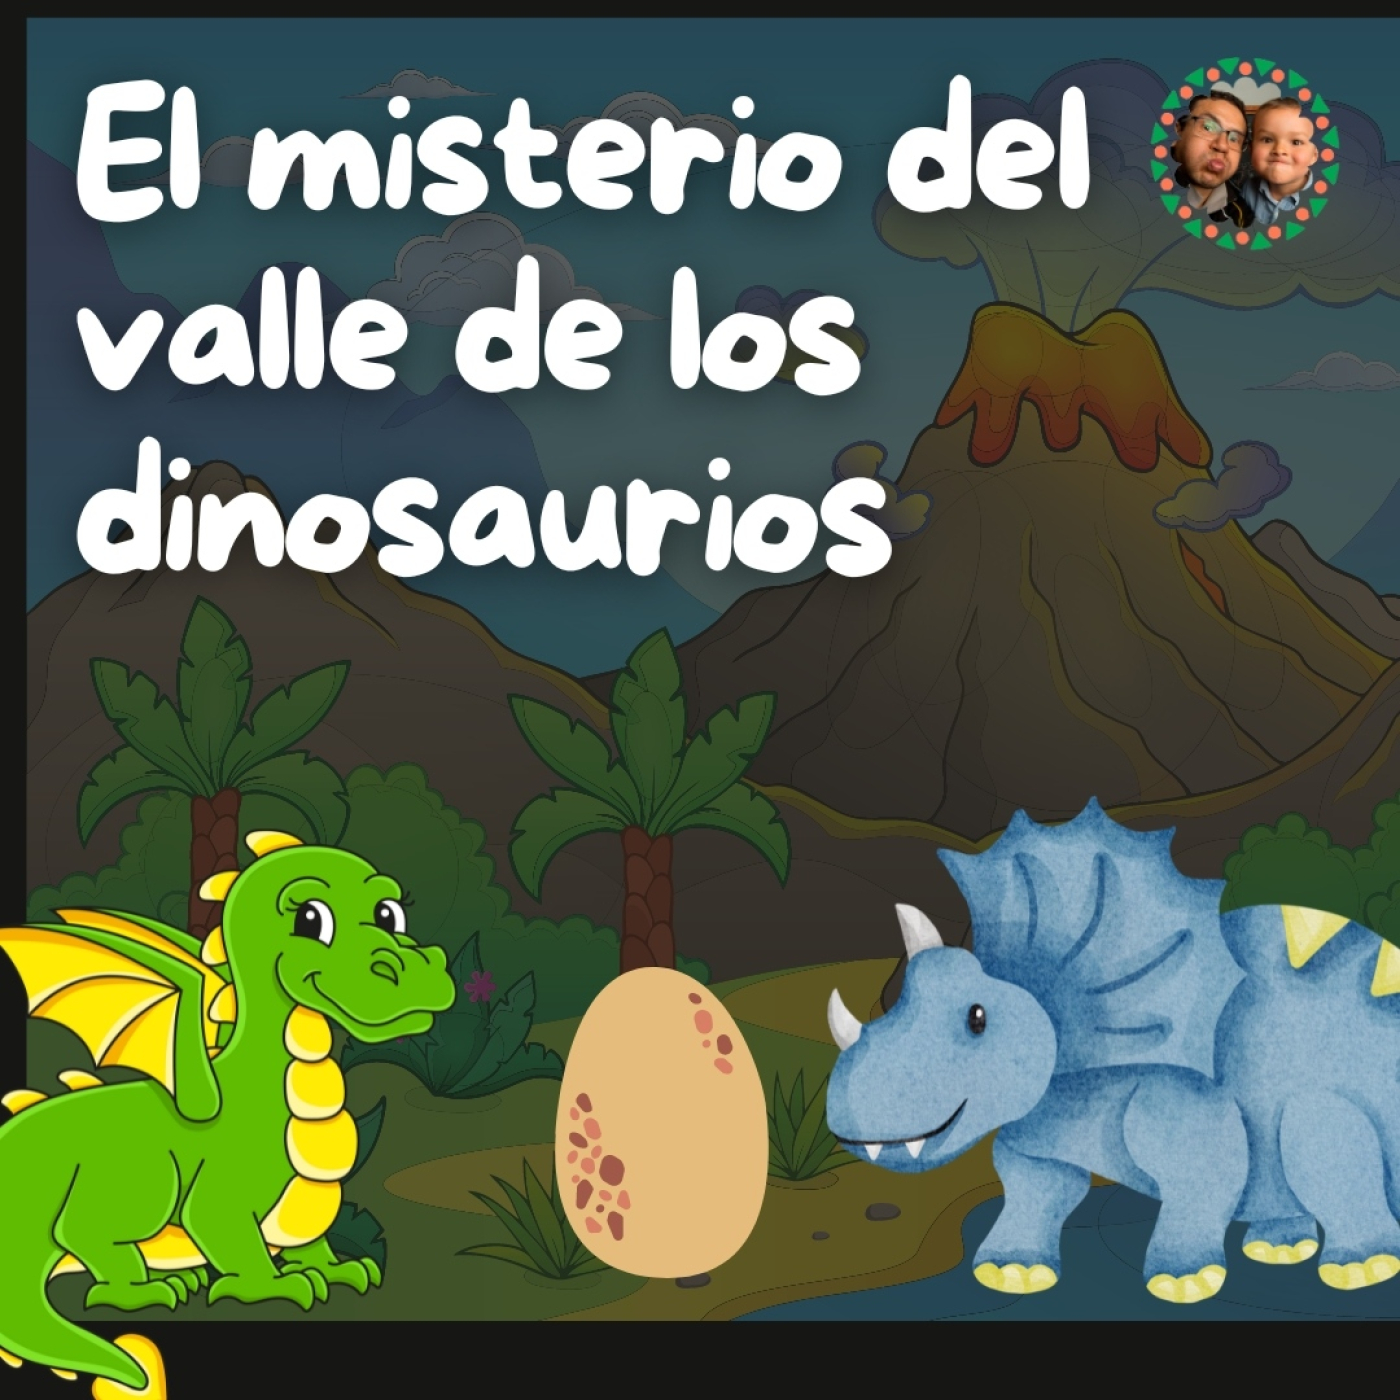 El misterio del valle de los dinosaurios